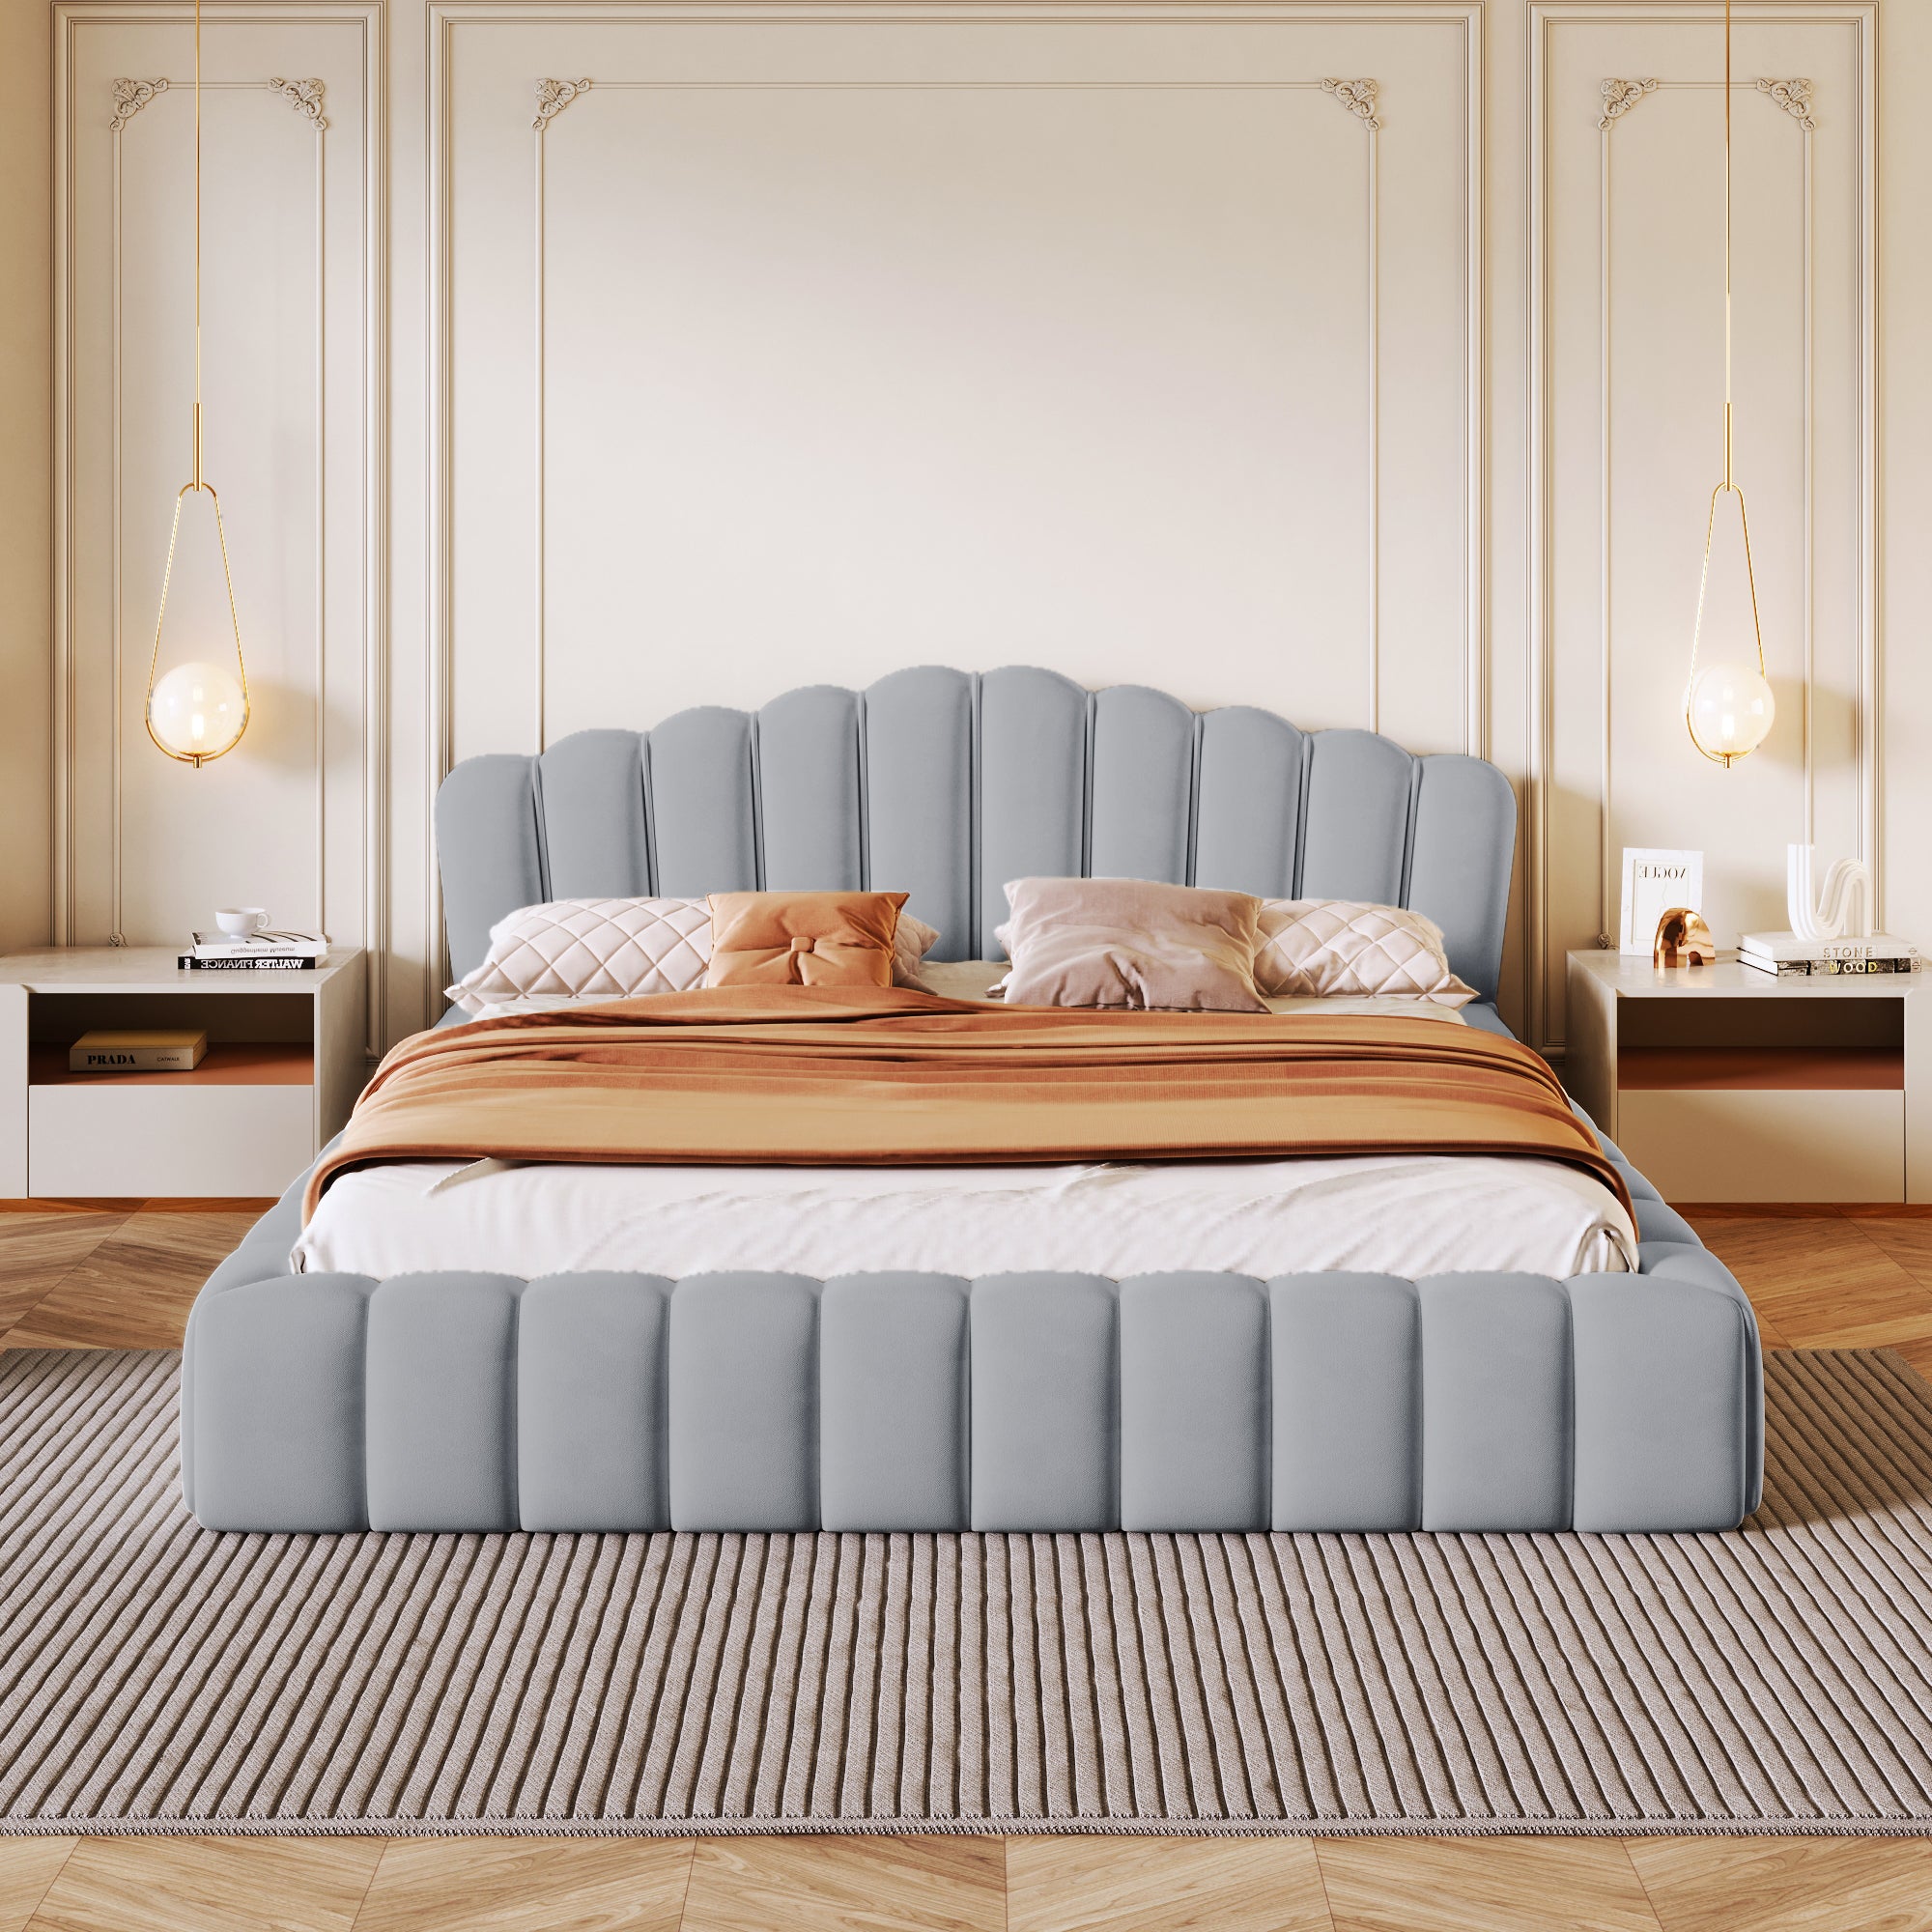 Velvet Upholstered Queen Bed Floor Bed Frame Shell-Shaped Headboard for Bedroom,No Box Spring Needed,Light Blue